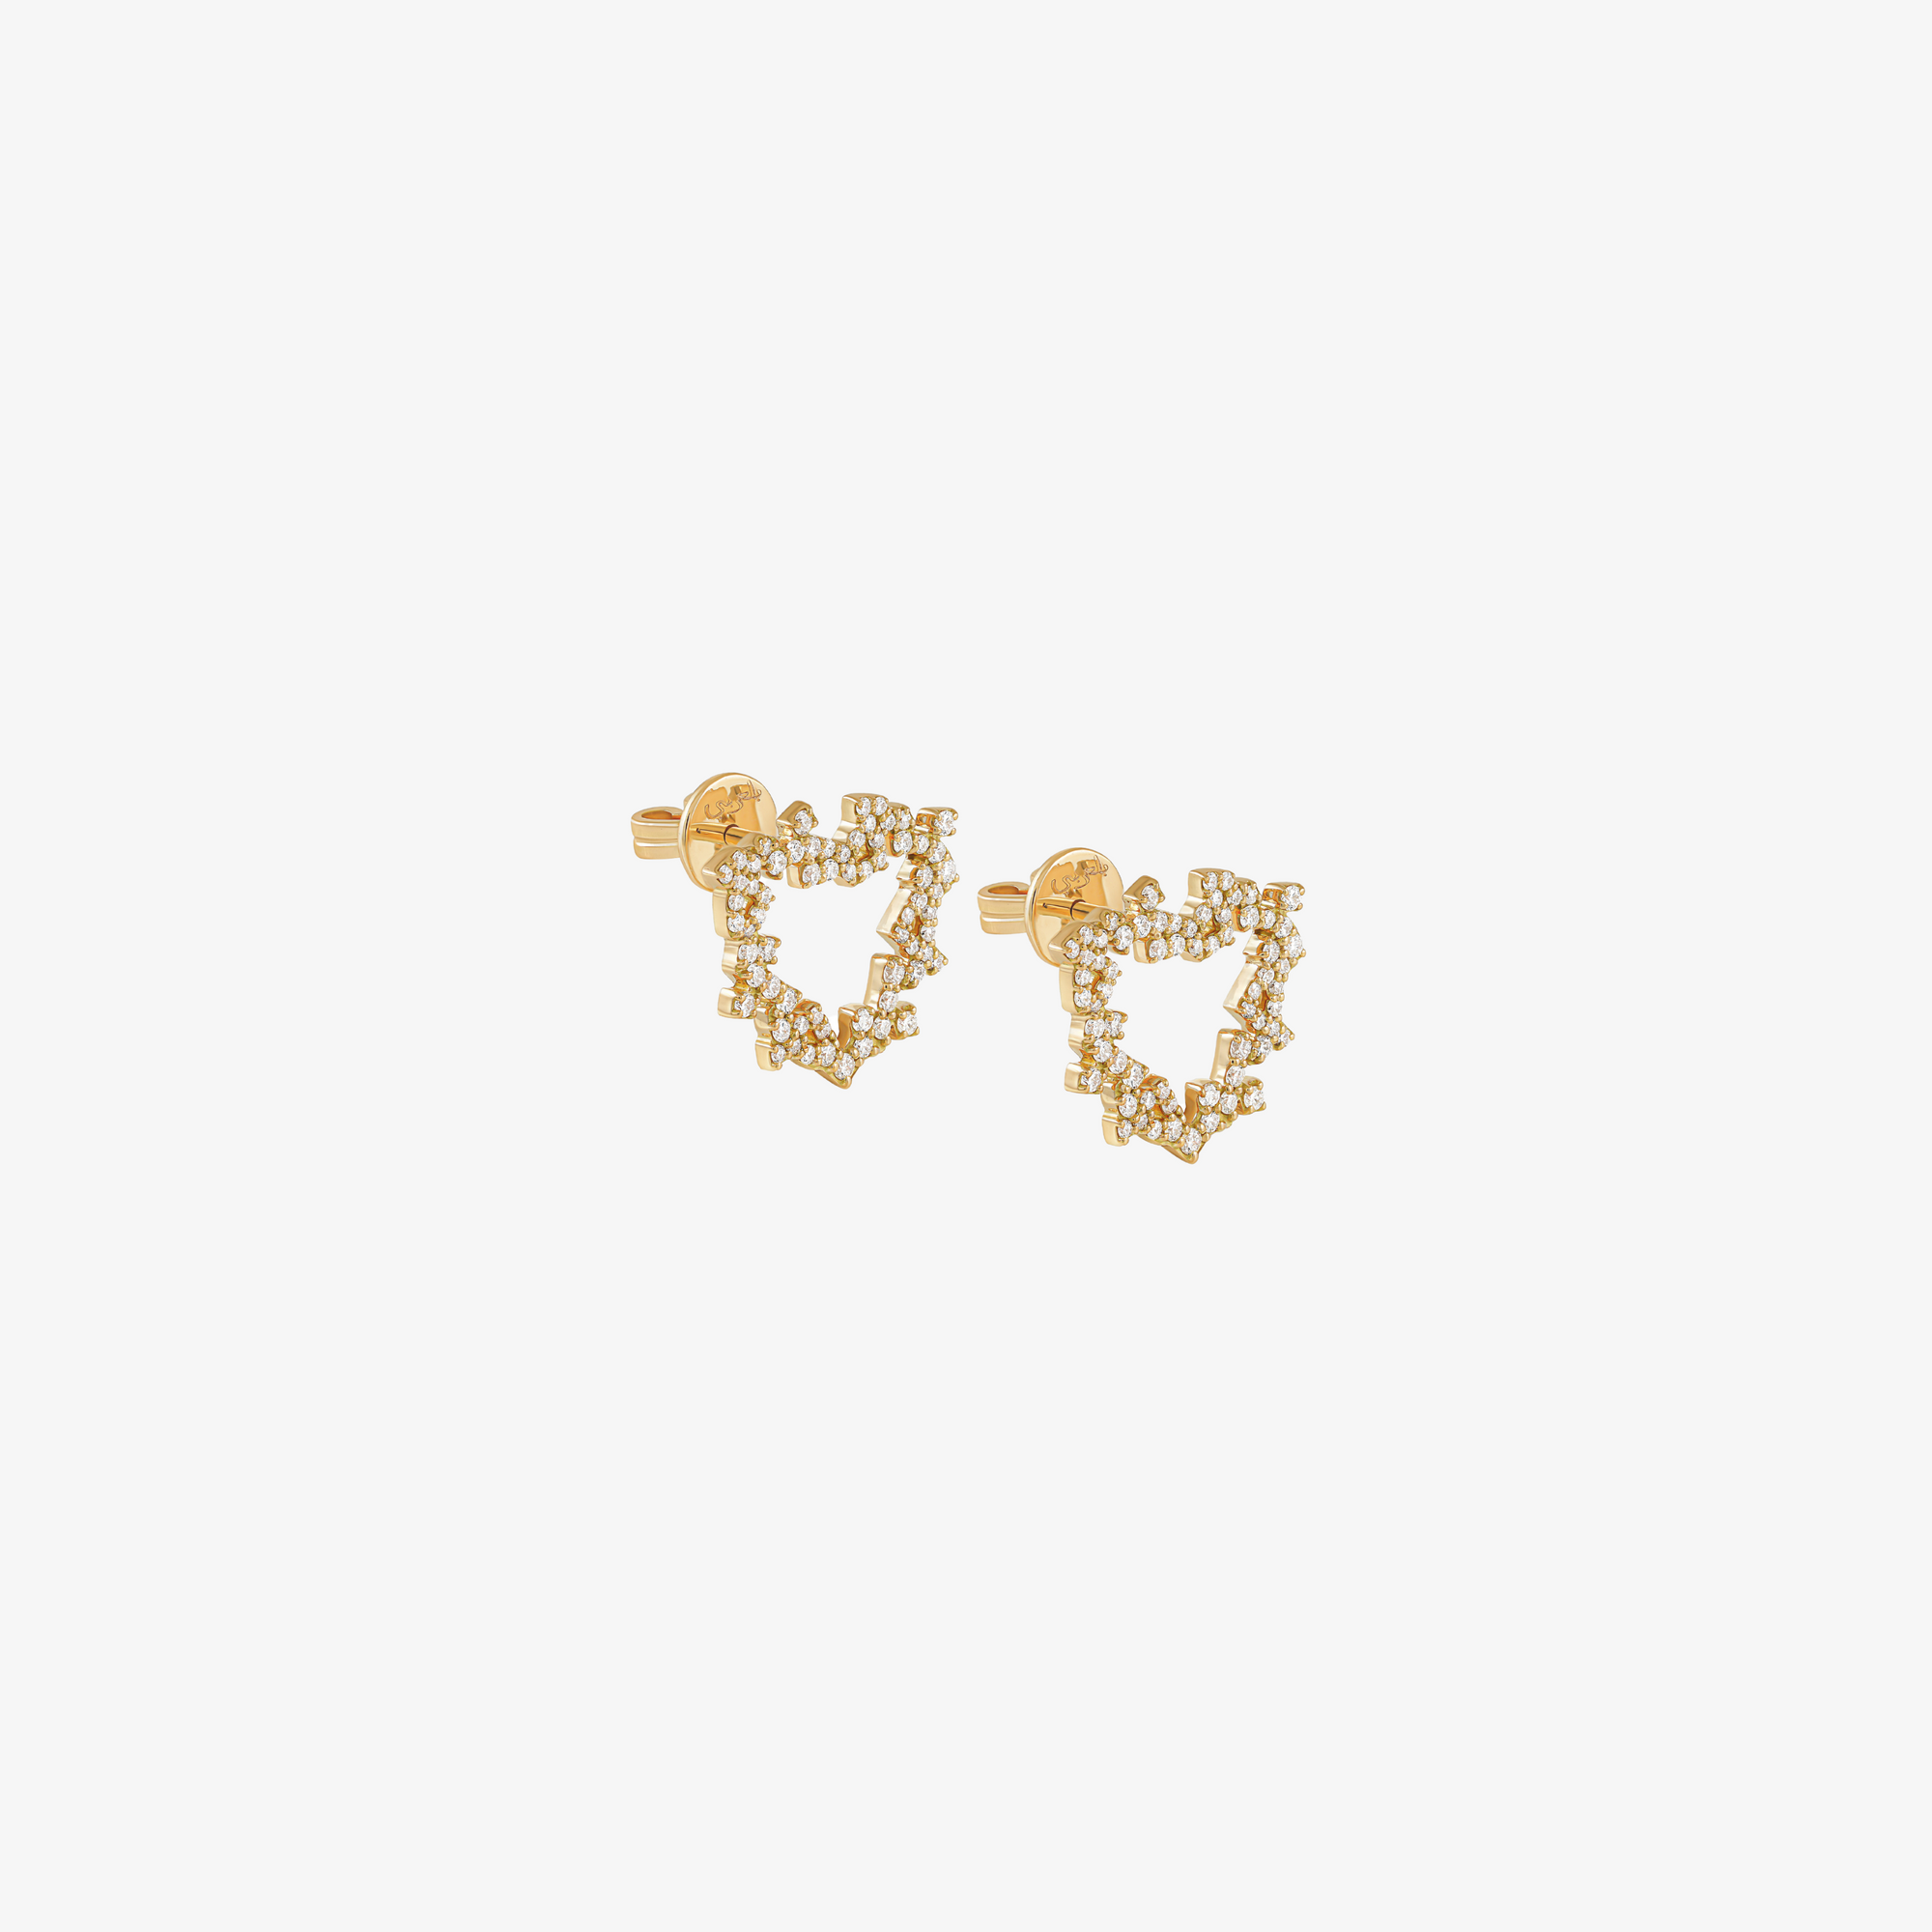 HOBB - 18K Gold & Diamond "Love" Earrings